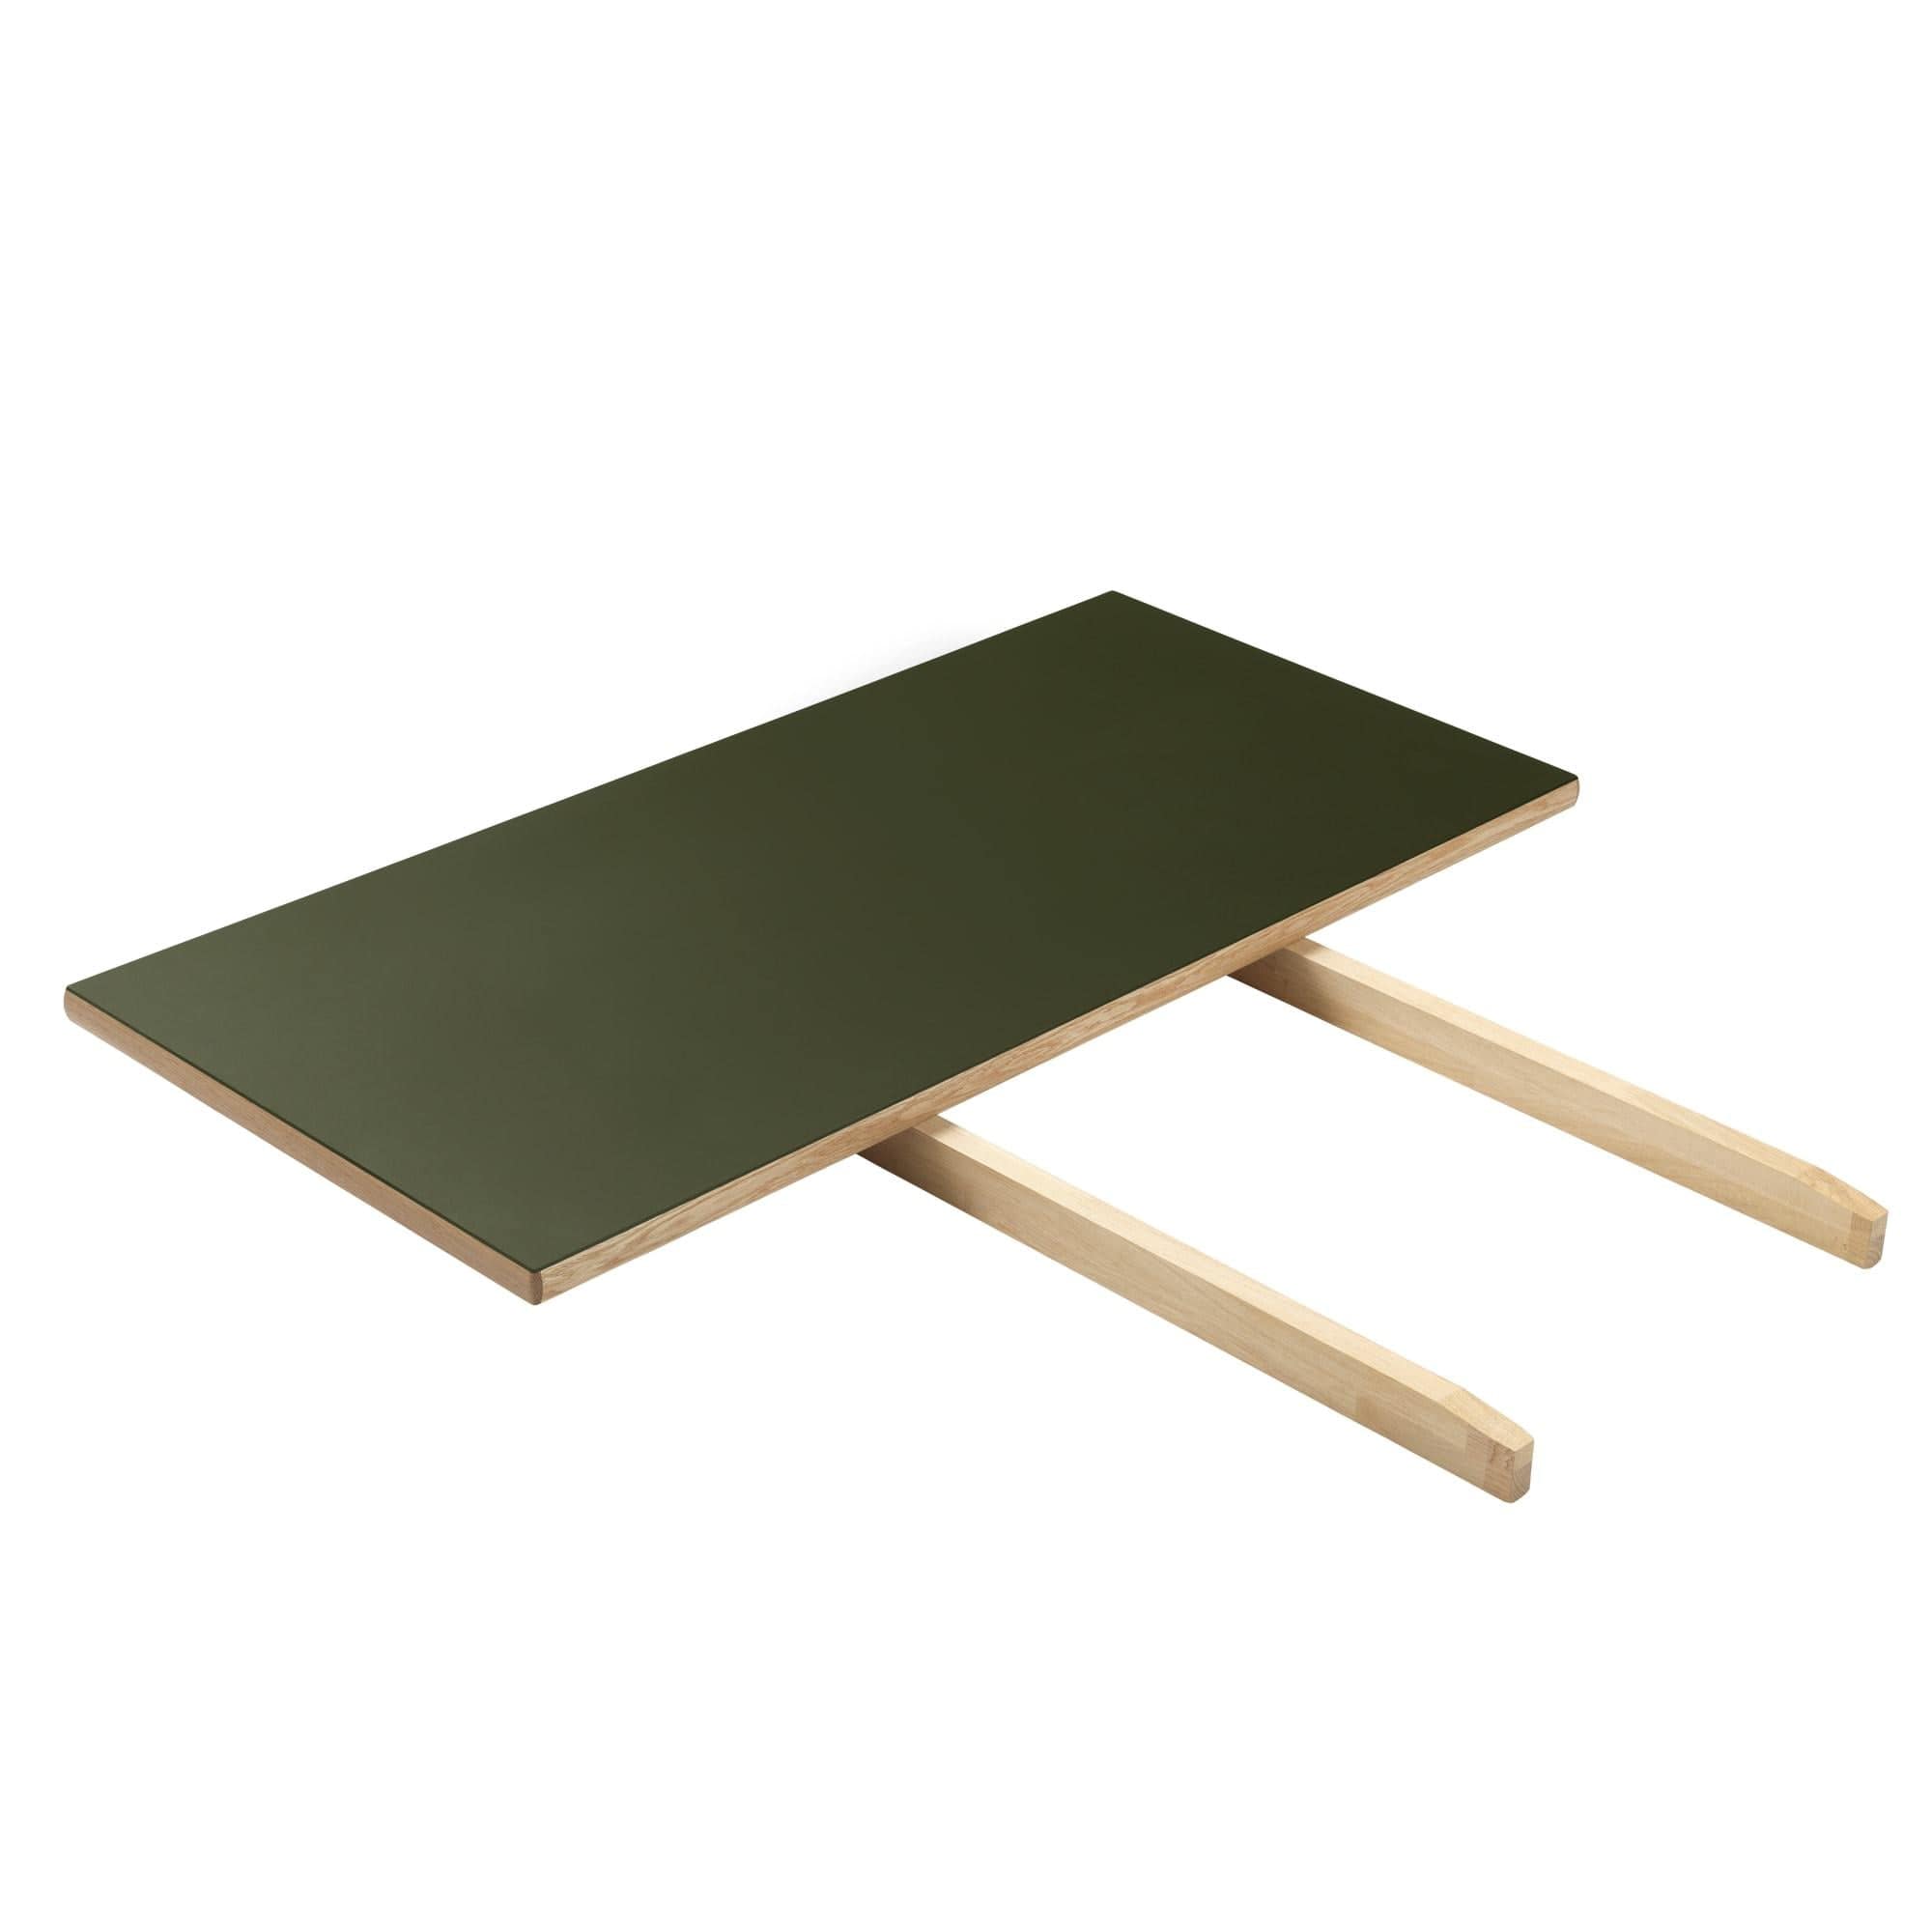 Fdb Møbler C35 Extension Plate Oak/Olive Linoleum, 45cm